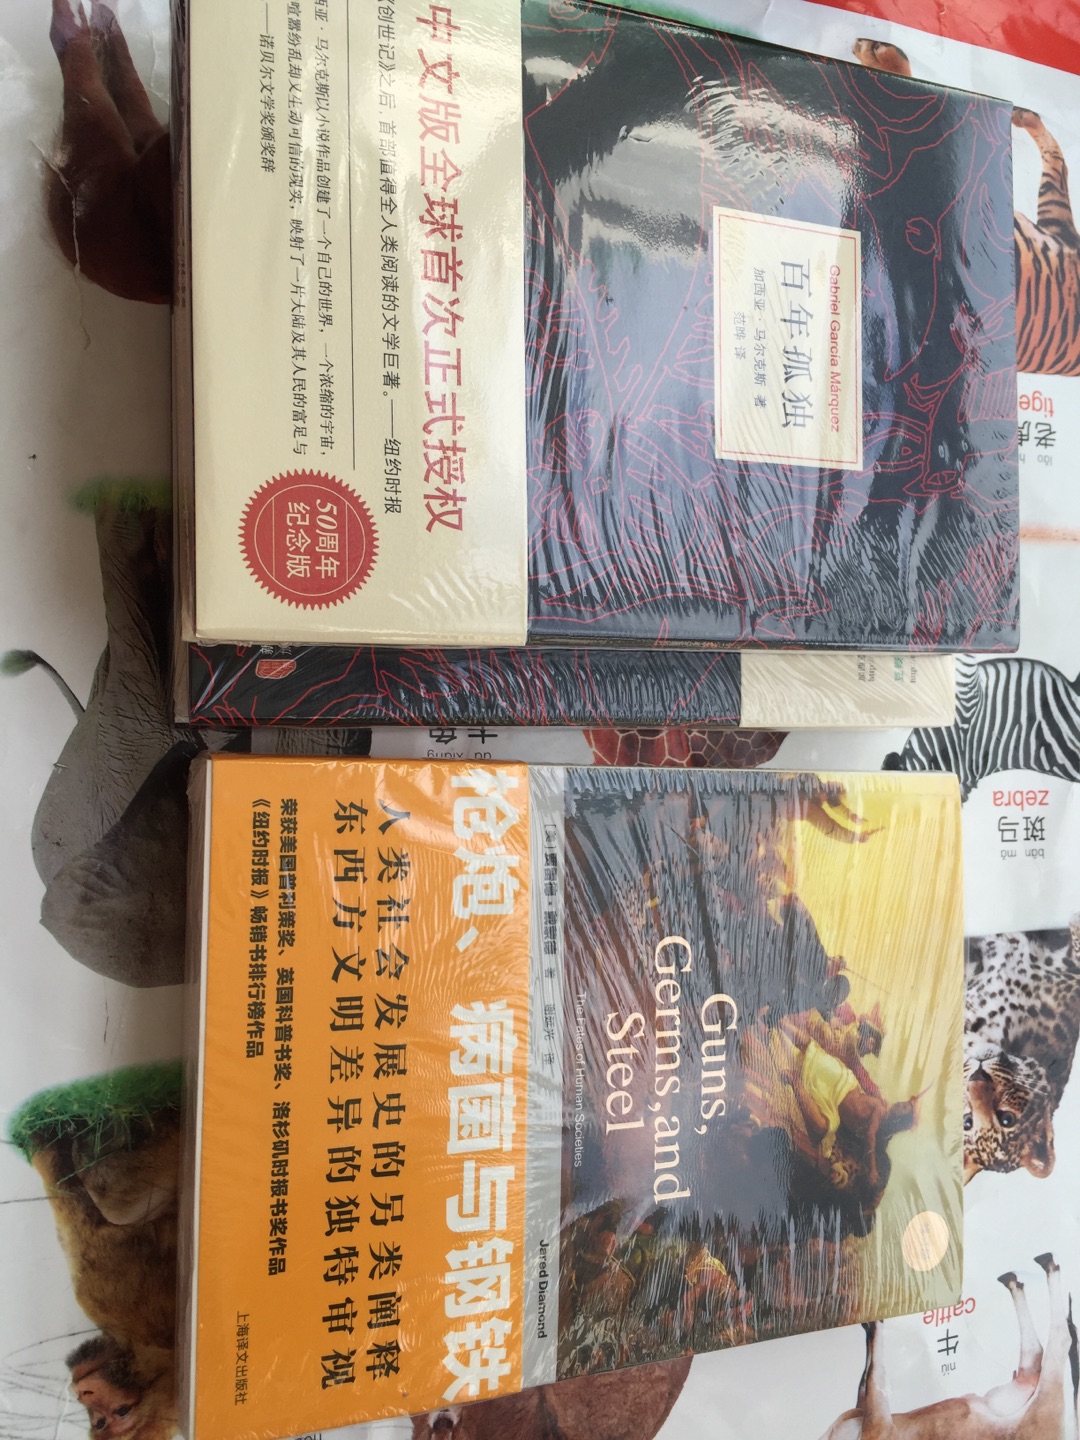 包装到位！物流迅速！但印刷有点模糊，这也是上海译文出版社的一大特色！